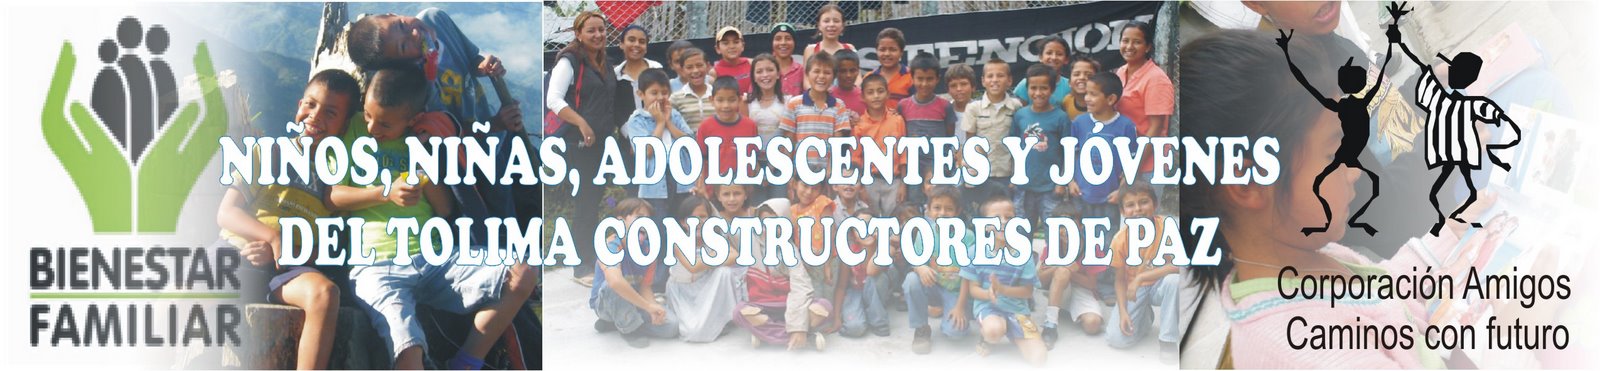 NIÑOS, NIÑAS, ADOLESCENTES Y JOVENES CONSTRUCTORES DE PAZ